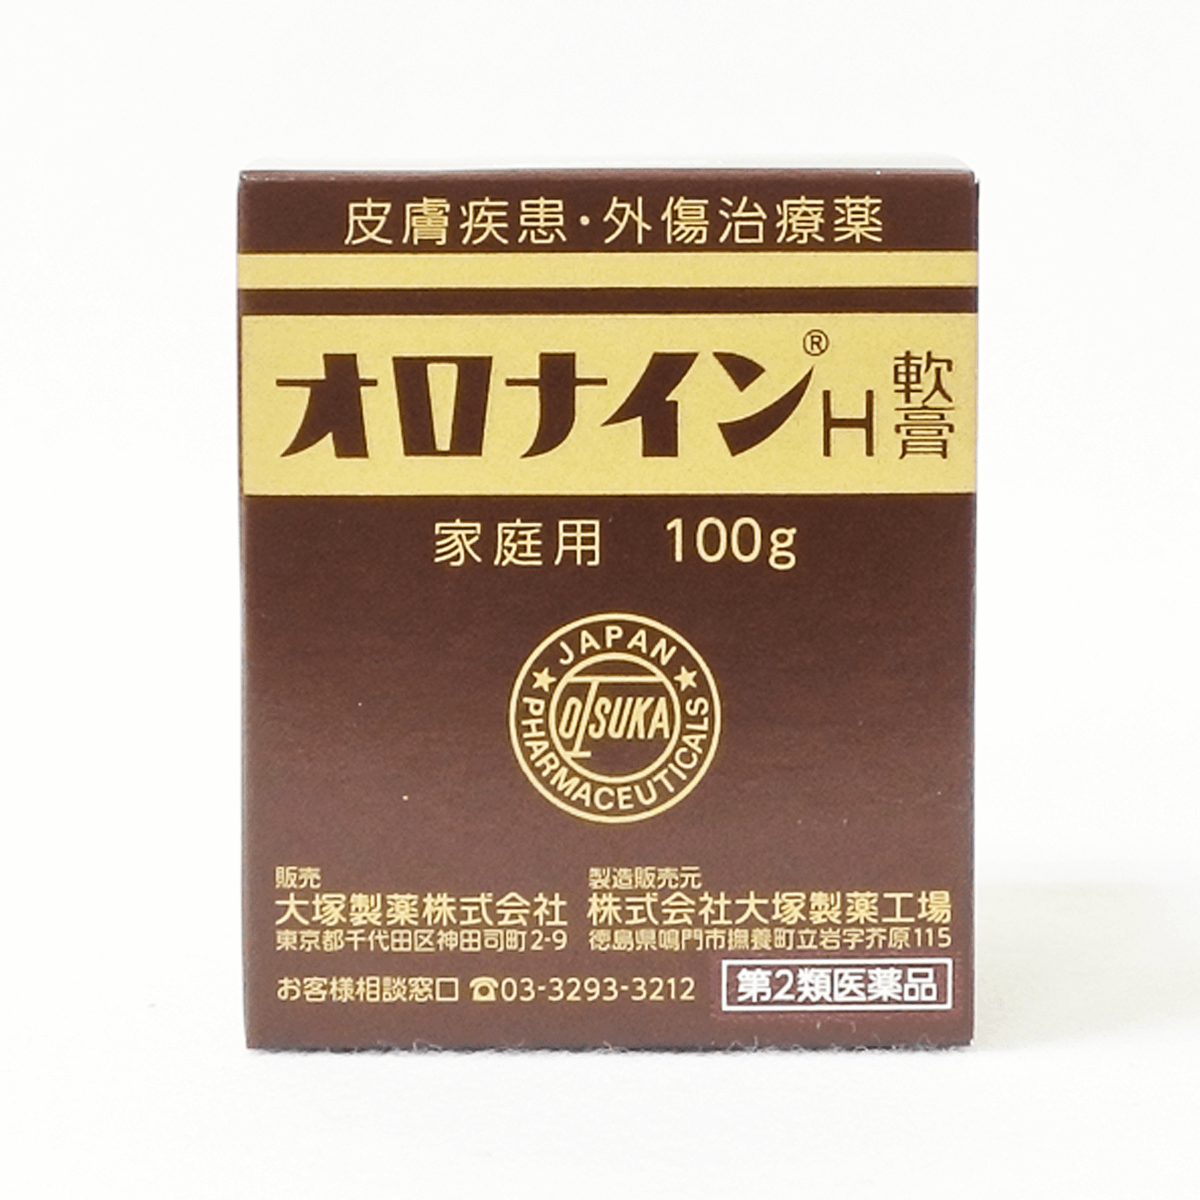 【第2類医薬品】大塚製薬 オロナインH軟膏 100g